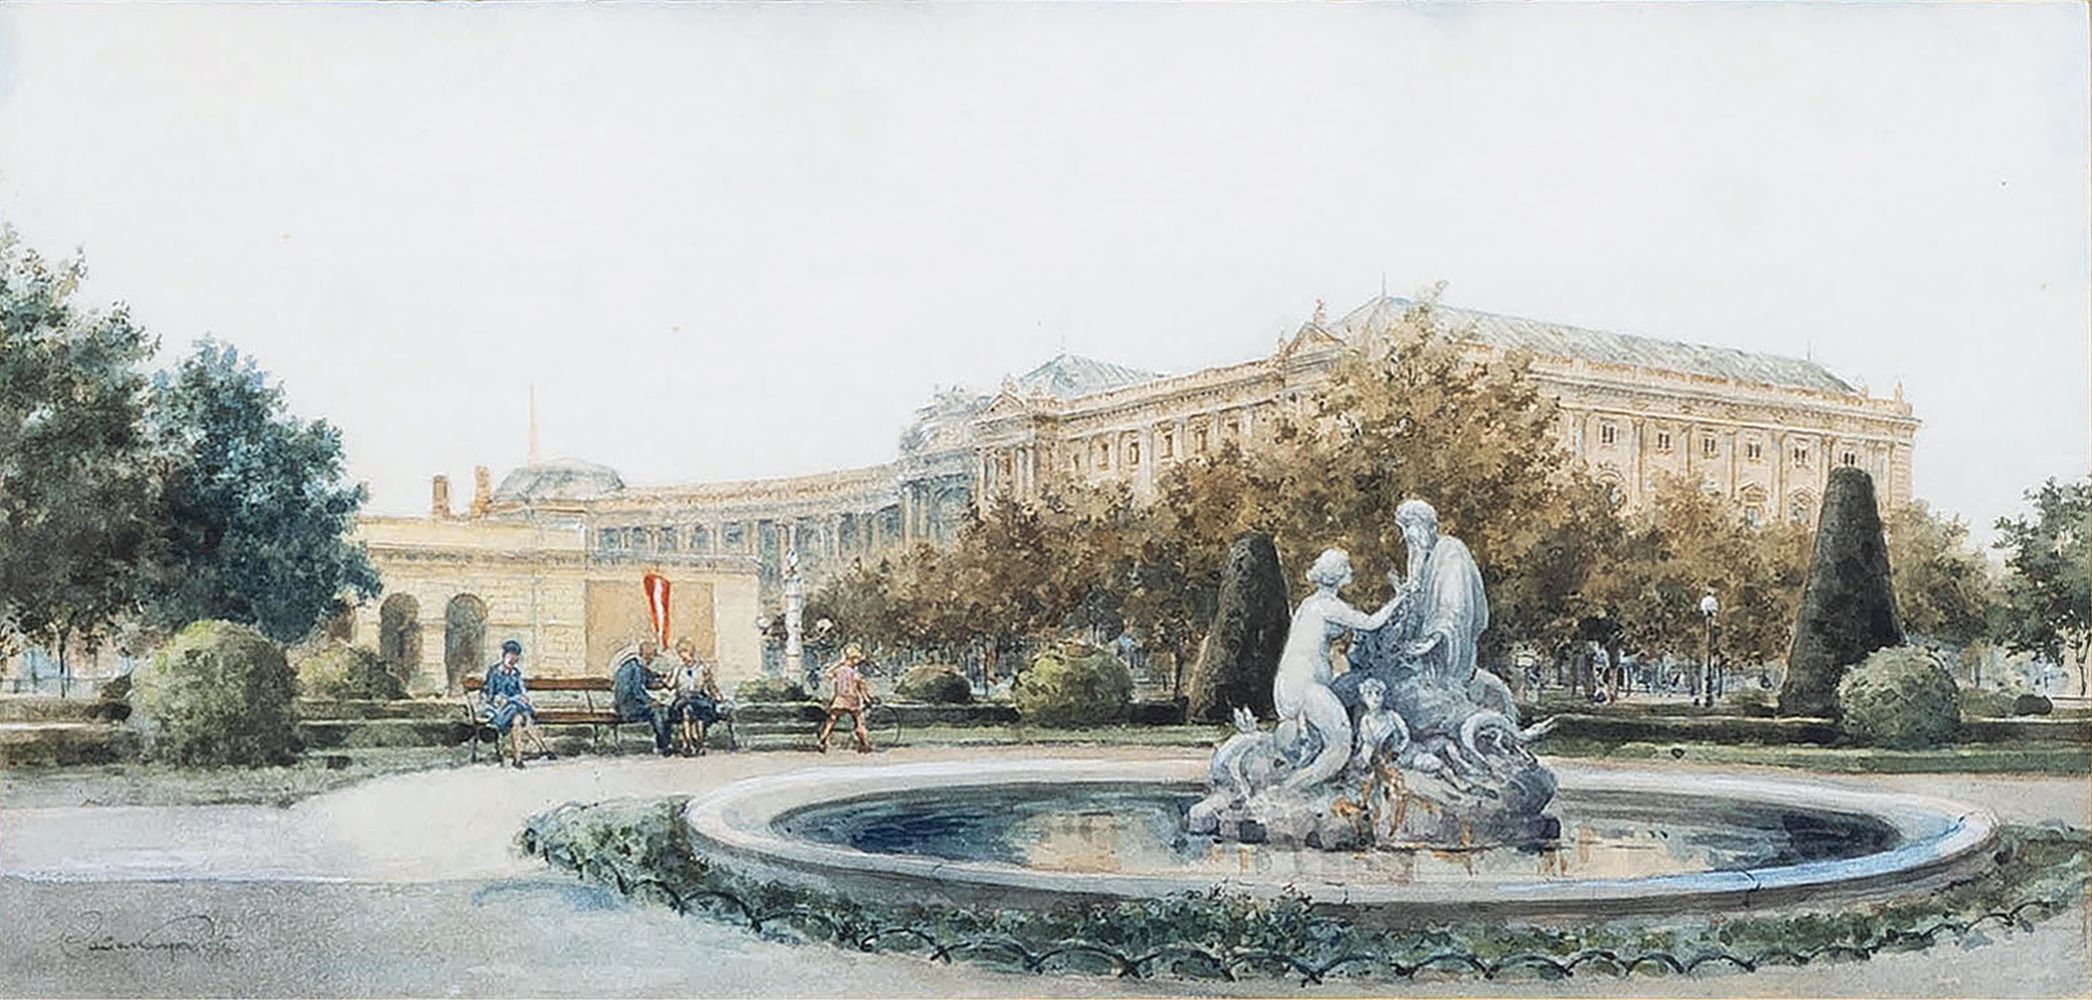 Hofburg in Vienna